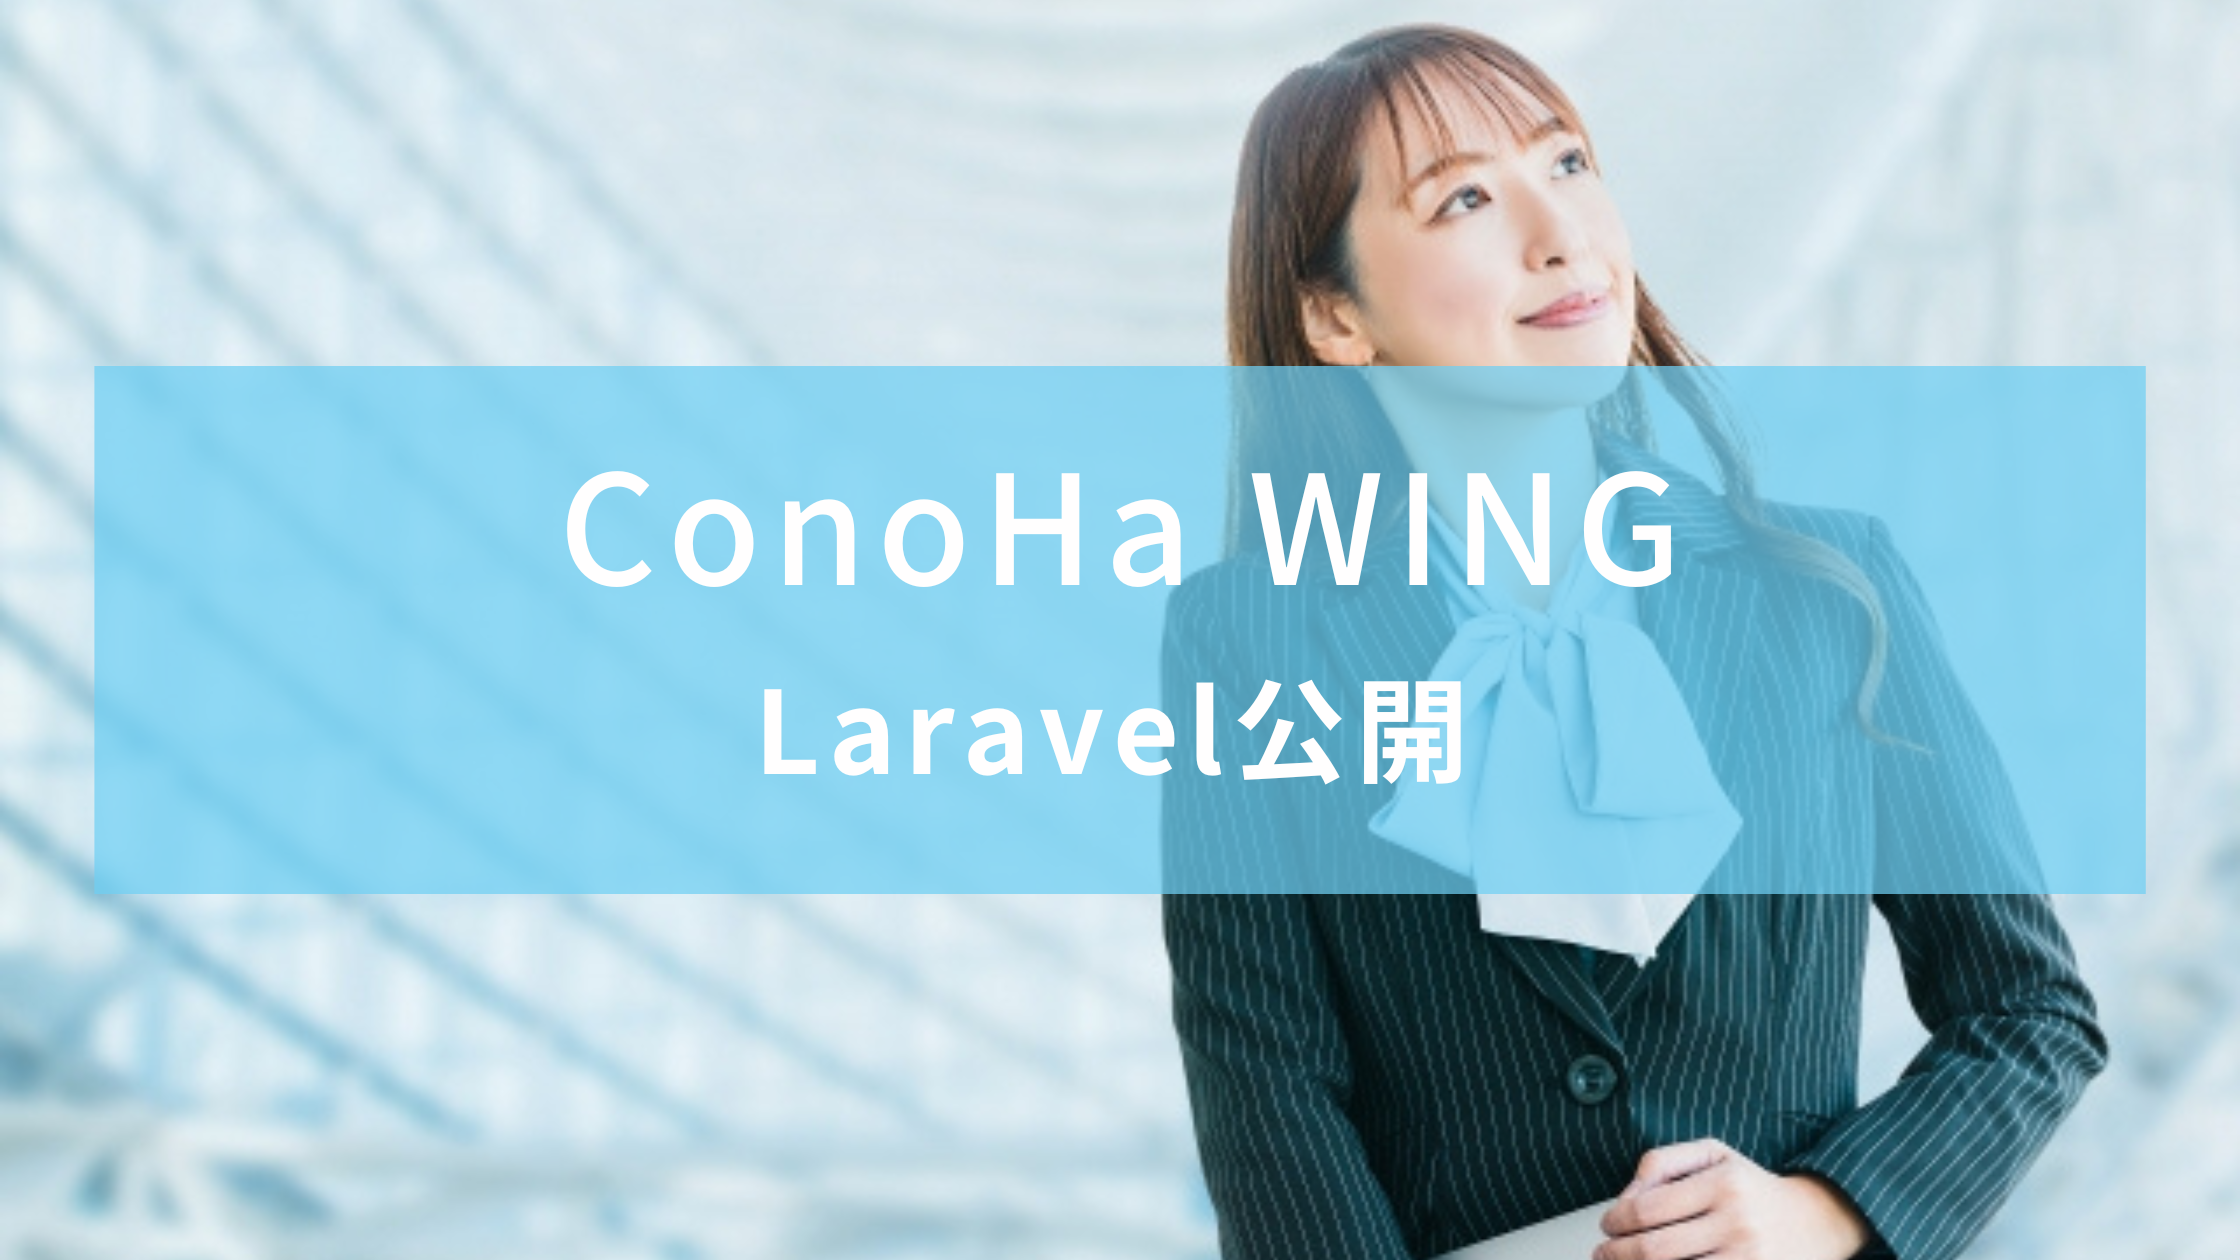 【ConoHa WING】Laravelアプリを公開